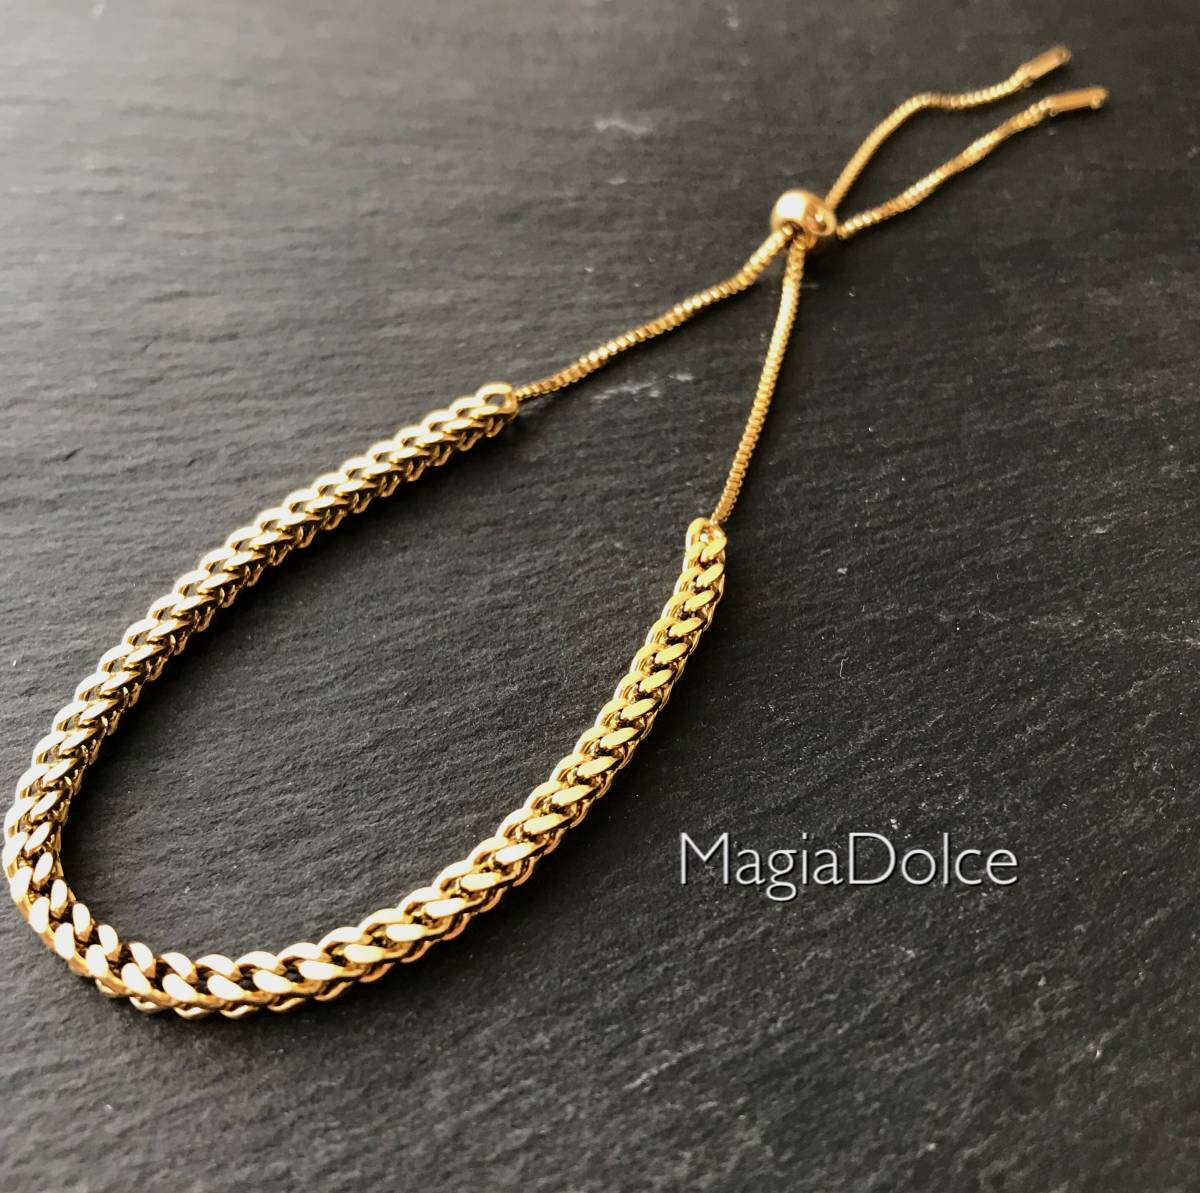  бесплатная доставка *MagiaDolce 5700* нержавеющая сталь браслет Gold браслет золотая цепь браслет простой браслет Корея 